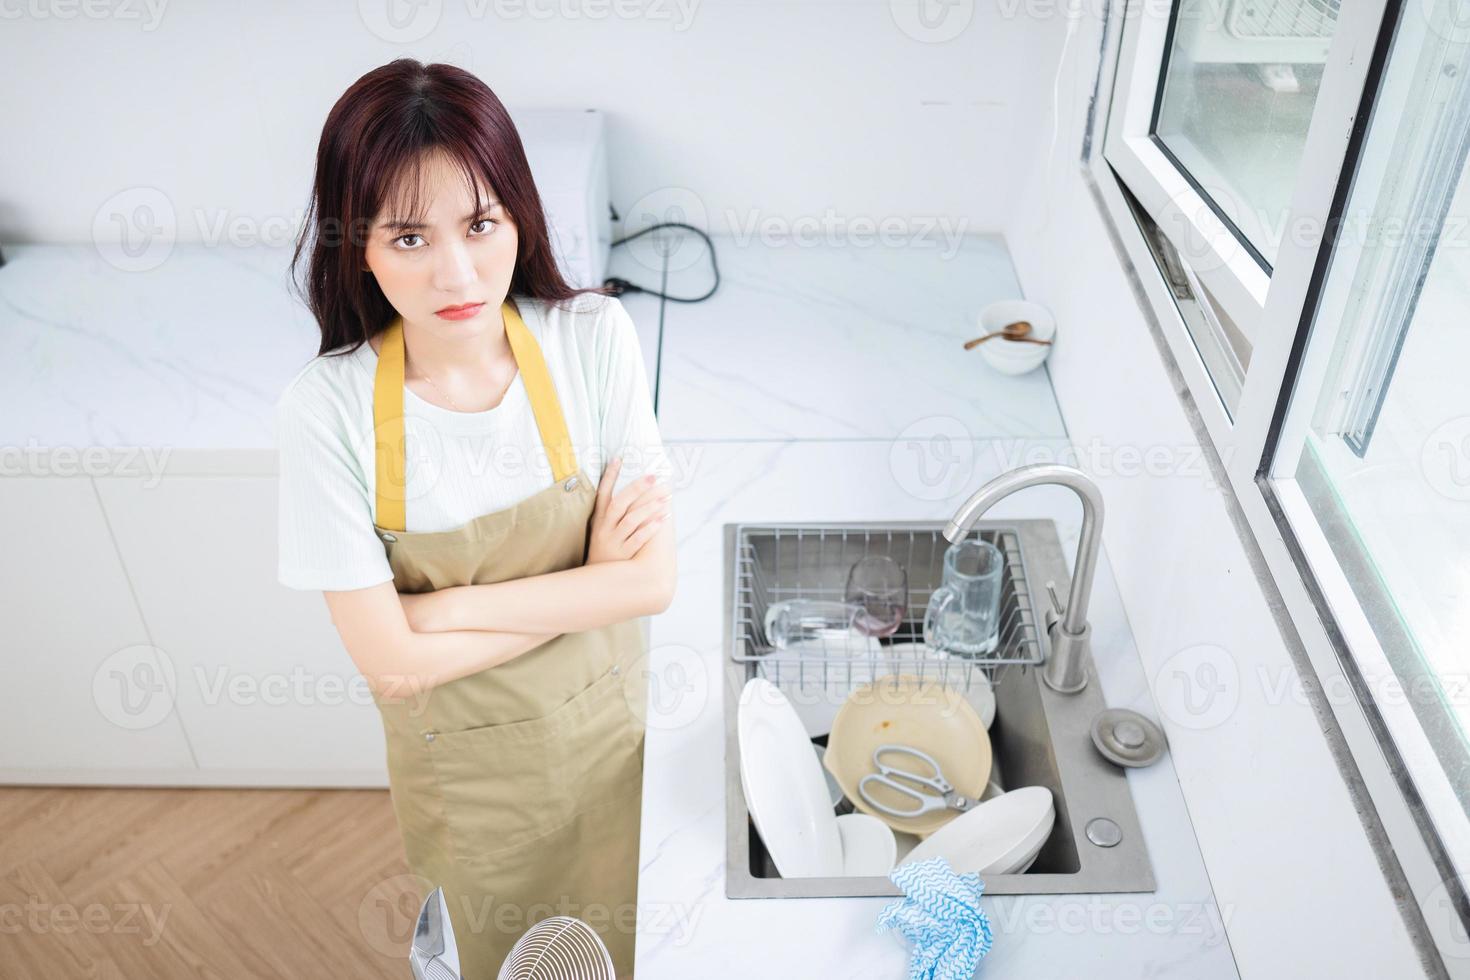 imagem de jovem asiática na cozinha foto